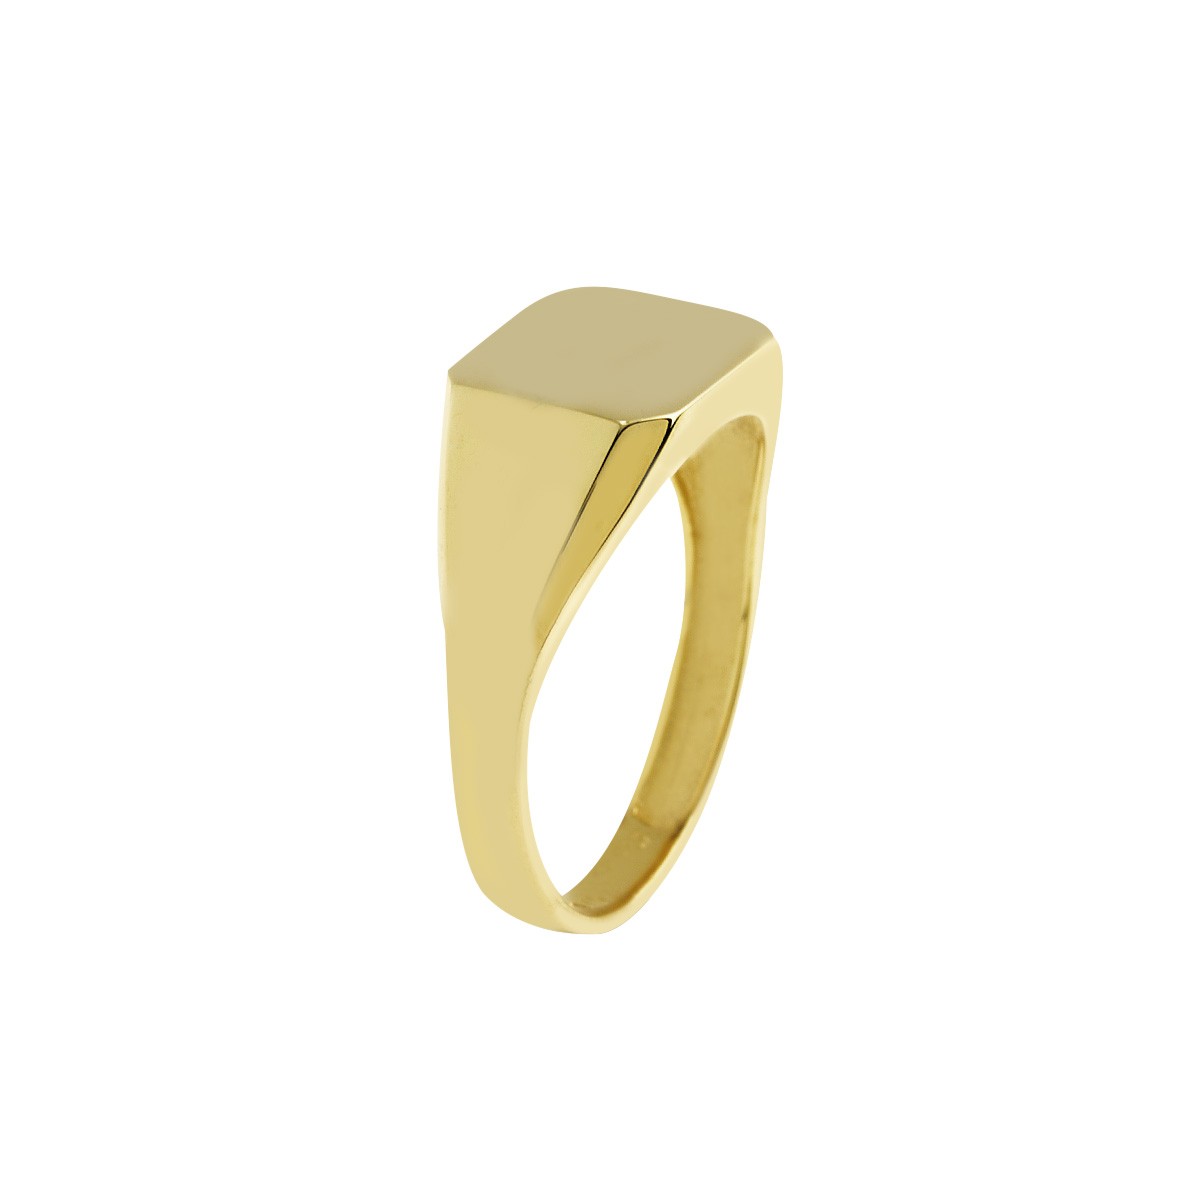 Δακτυλίδι Ανδρικό Χρυσό Κ9 Κωδ: 401150